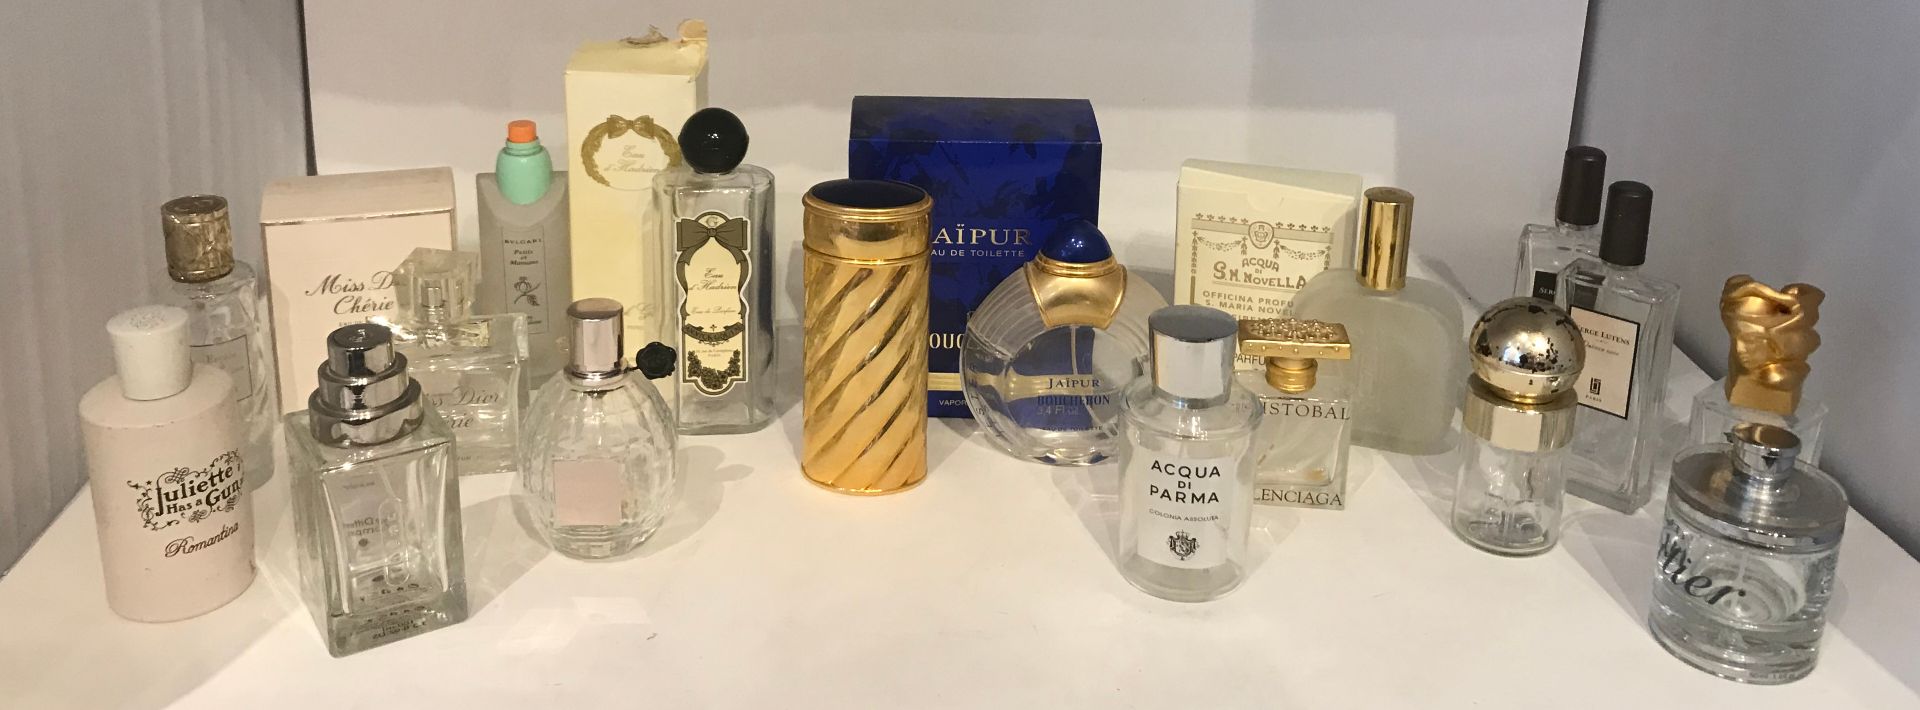 Null Lot de bouteilles de parfum et eau de toilette

Boucheron, Dior, Annick Gou&hellip;